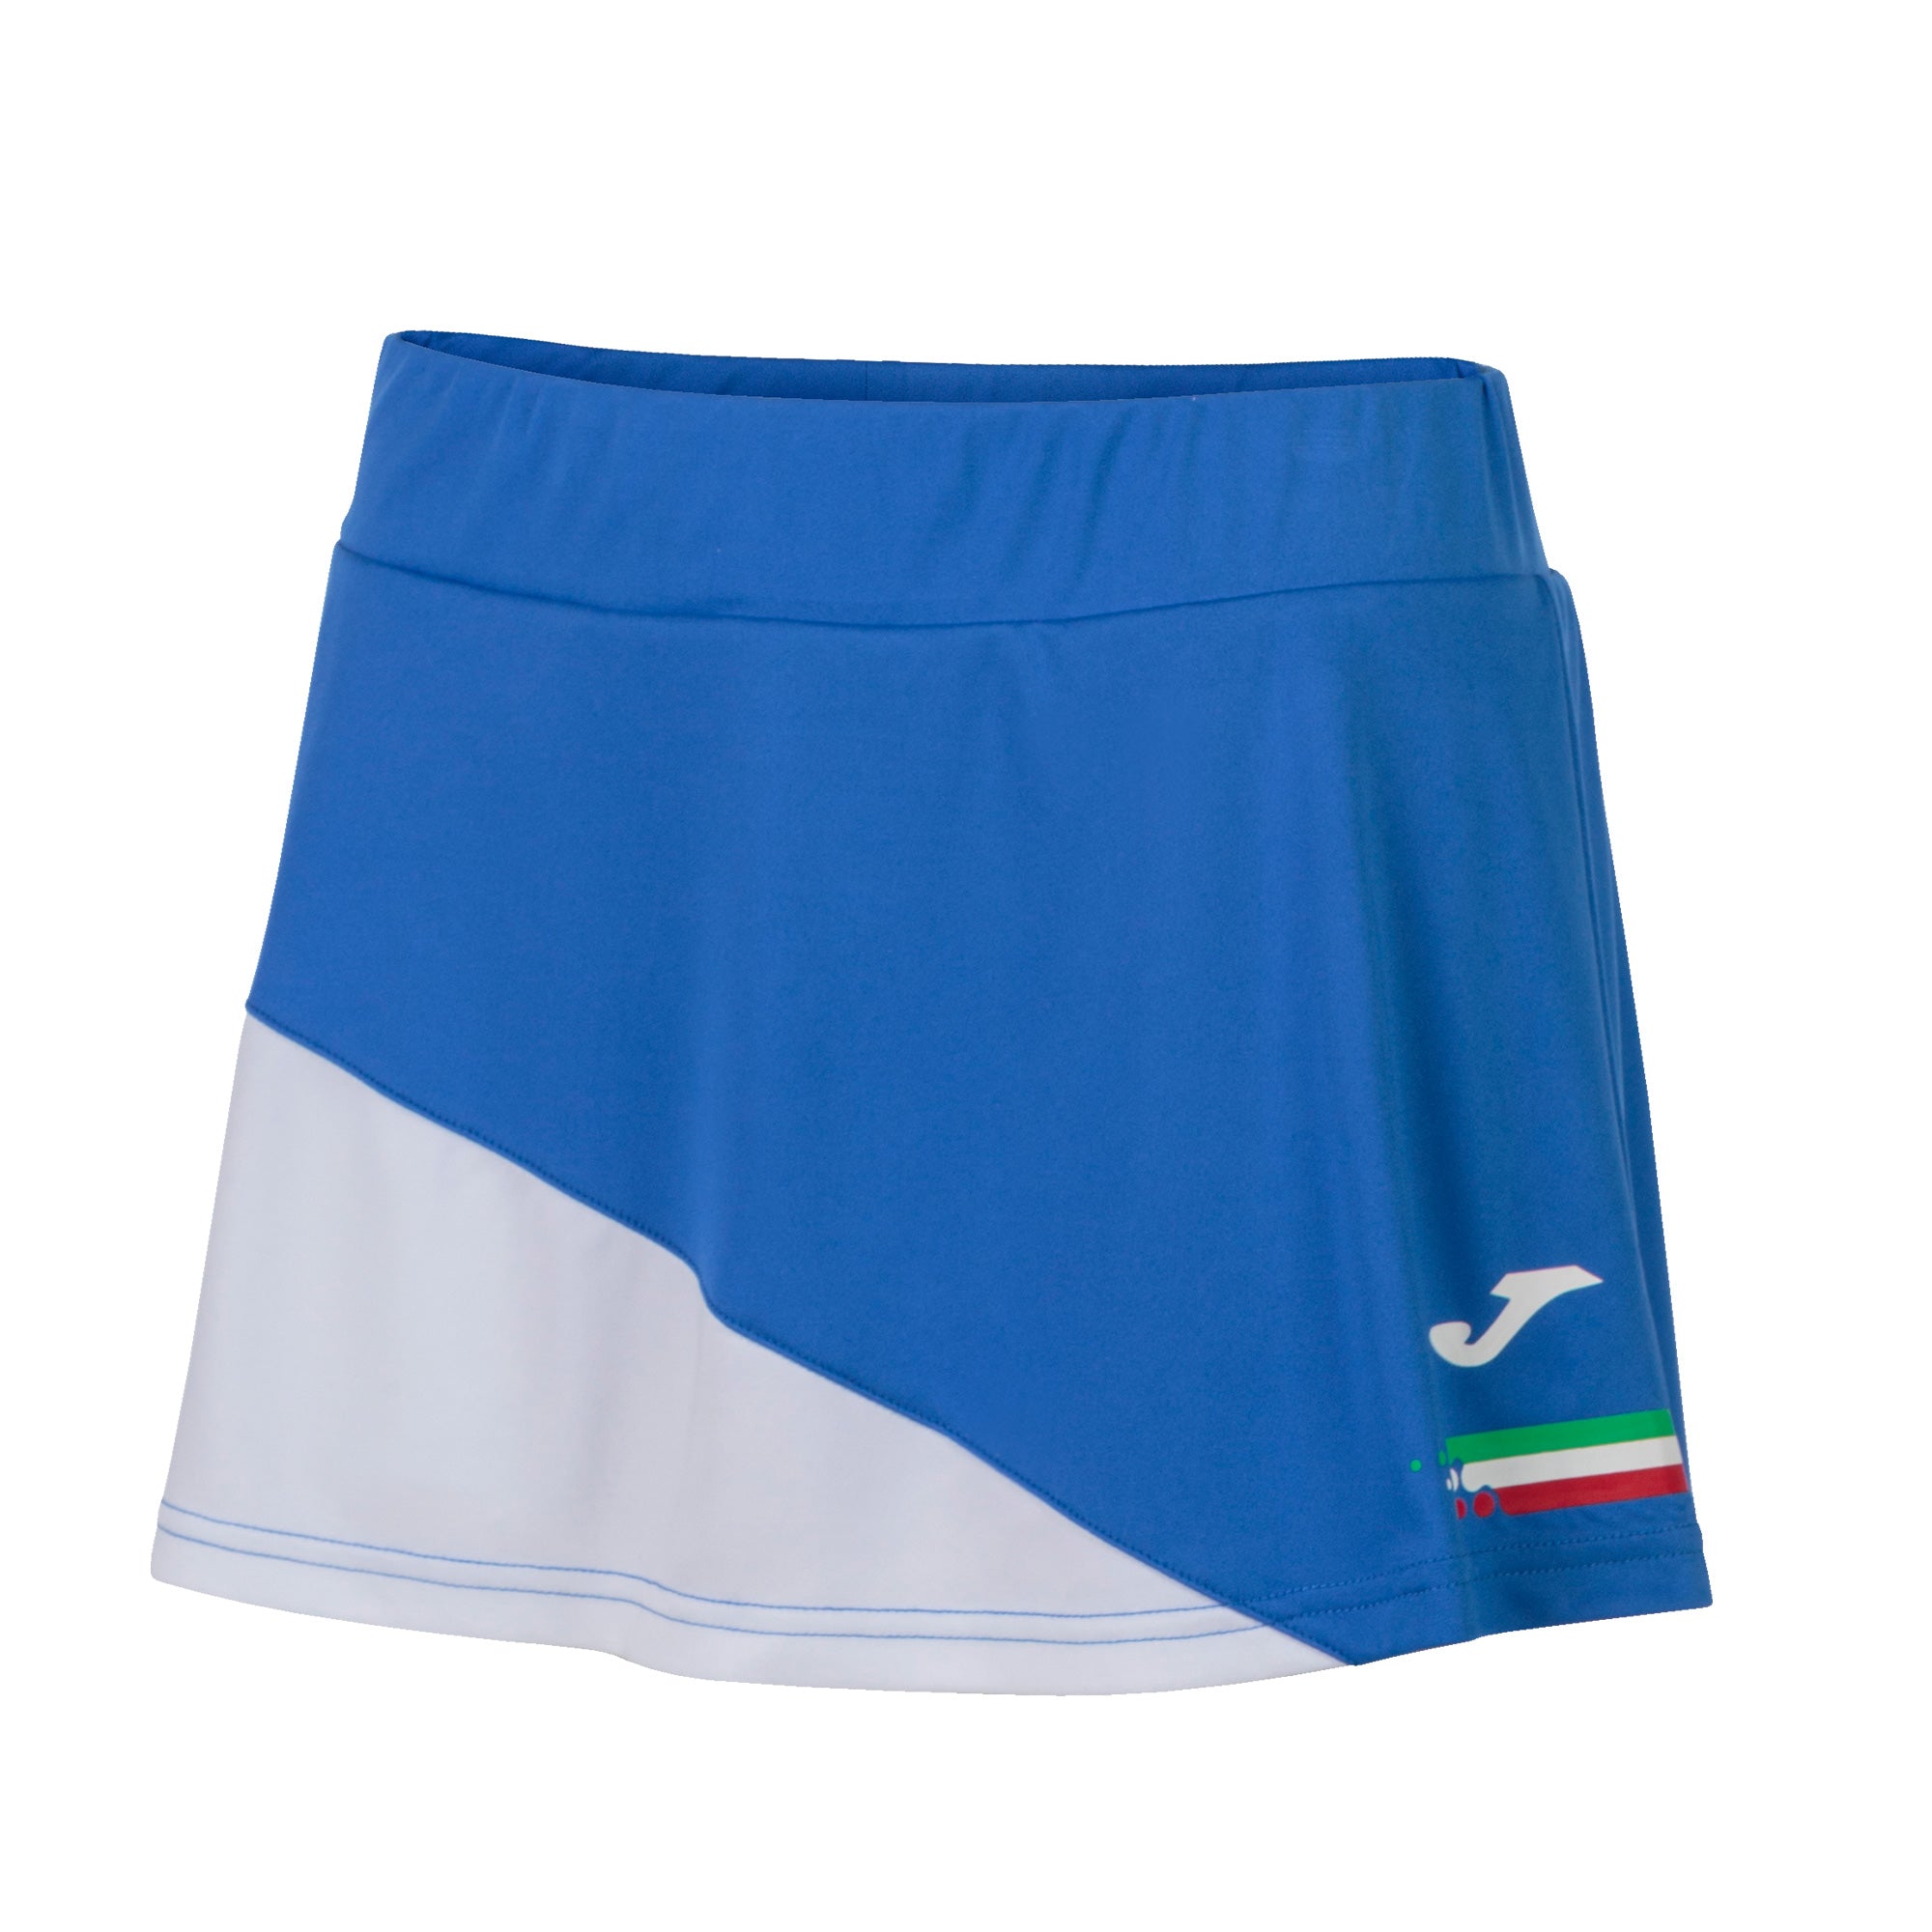 Gonna Fed. Italiana Tennis Blu